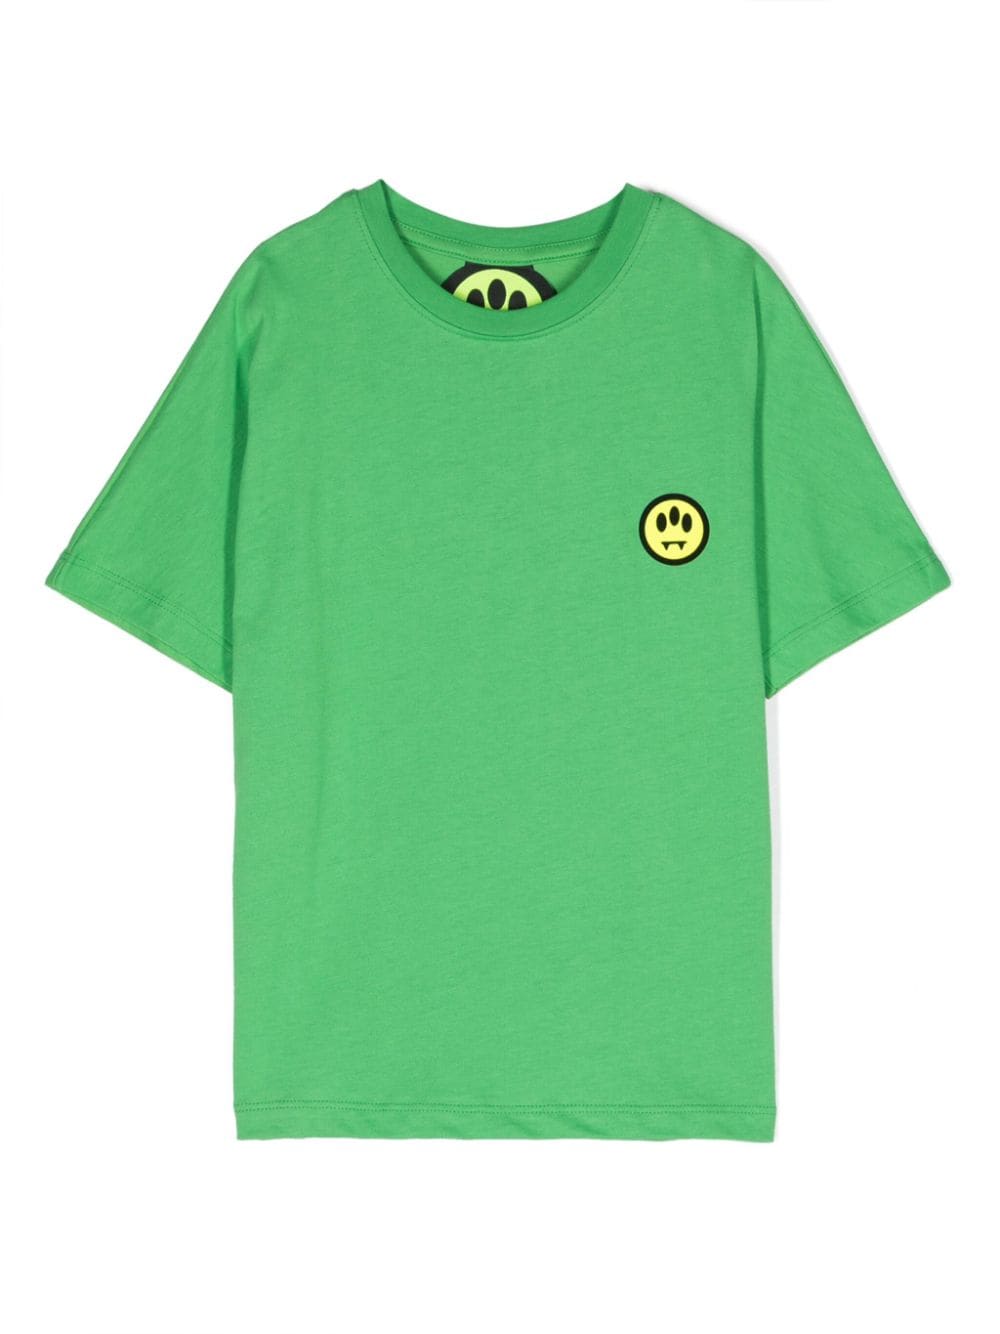 T-shirt verde logo retro